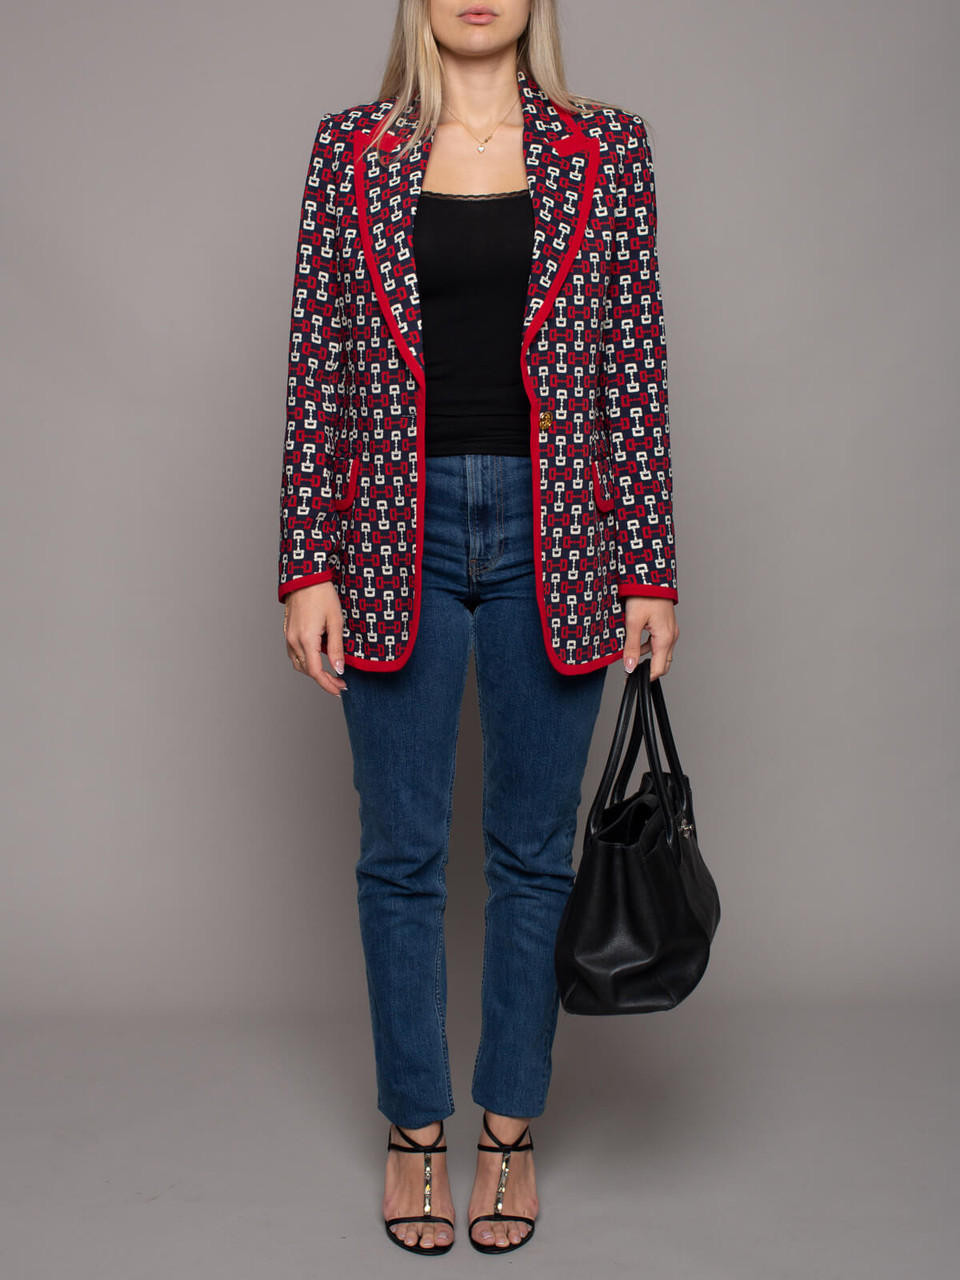 Gucci Women's Blazer, Size 12 UK, Red Viscose